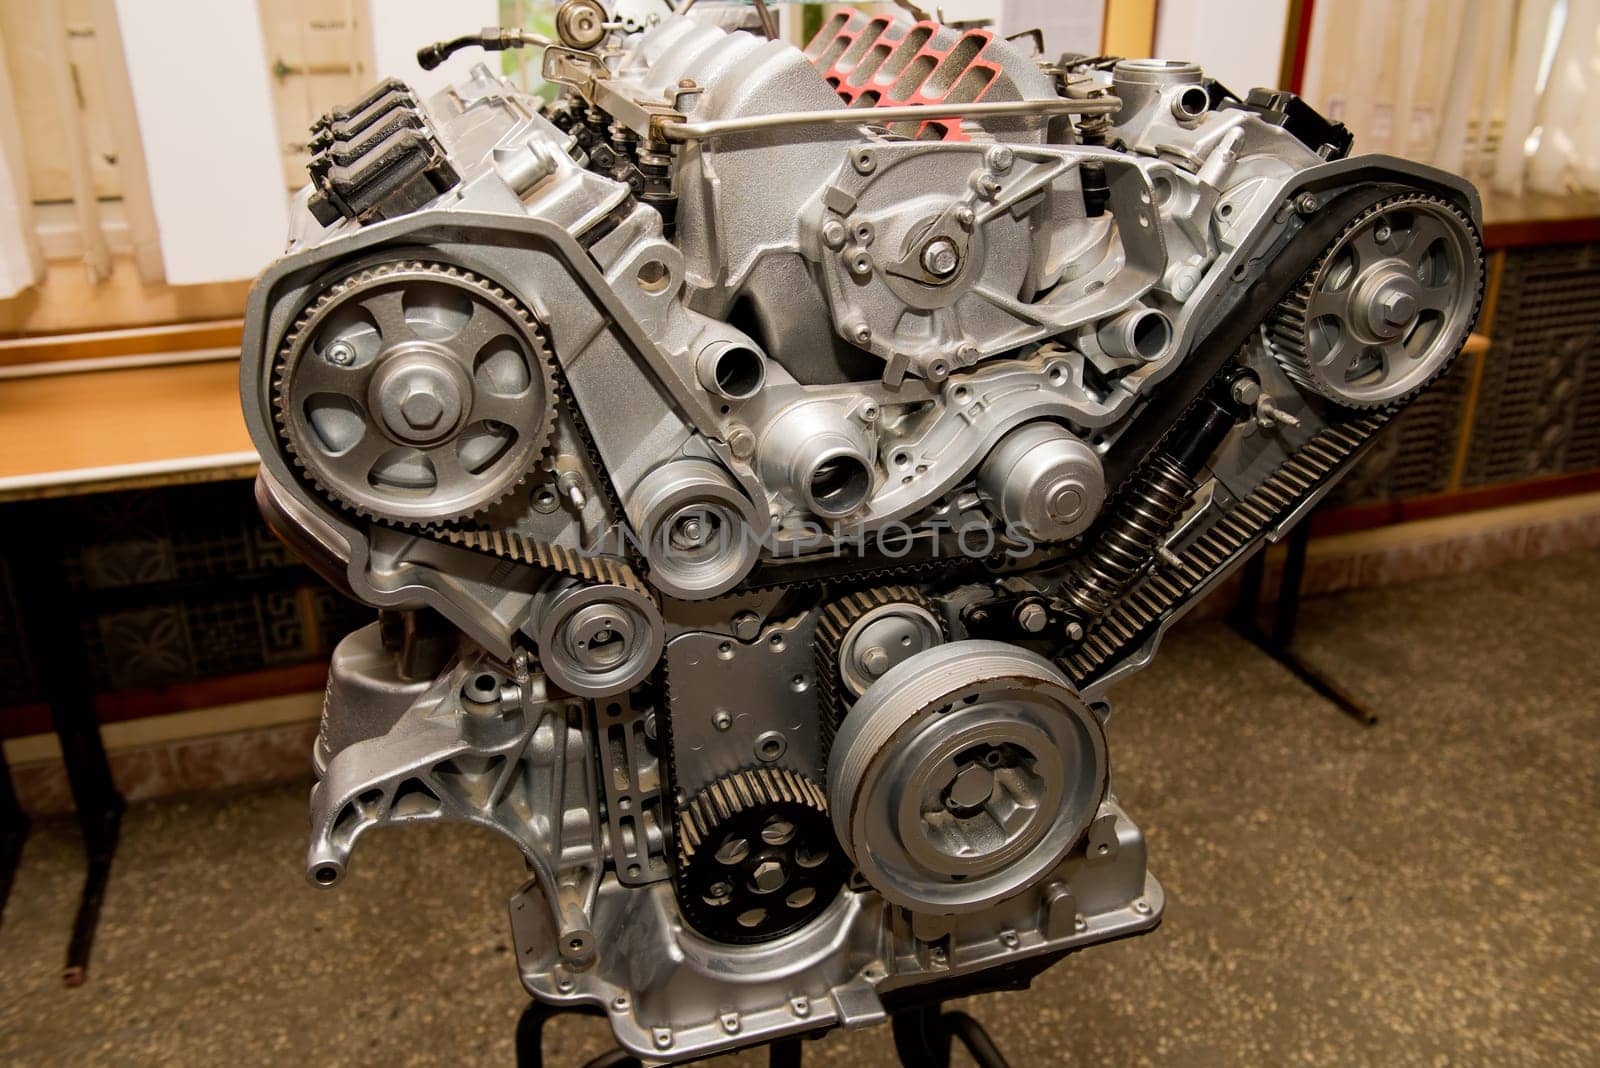 Cutaway model of a car engine. Tutorial for car mechanics.